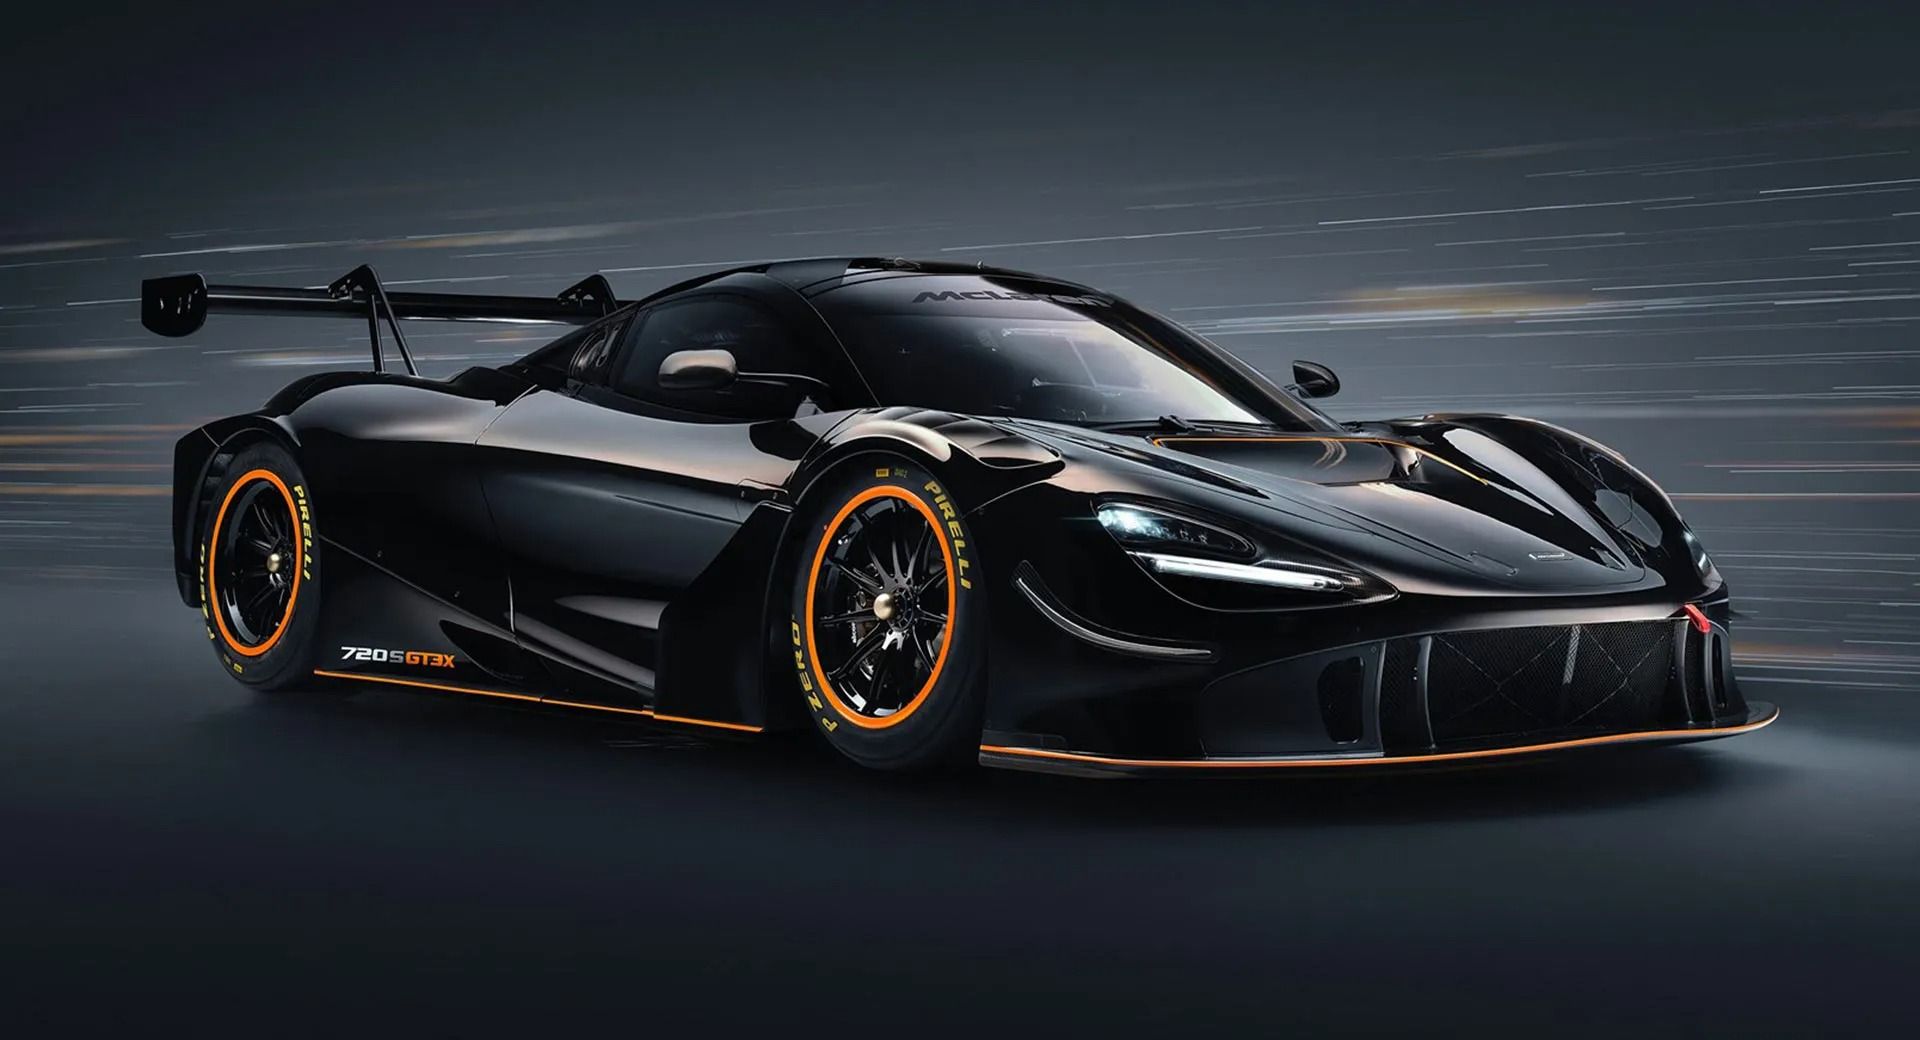 McLaren превратил гоночный 720S GT3 в еще более быстрый 720S GT3X